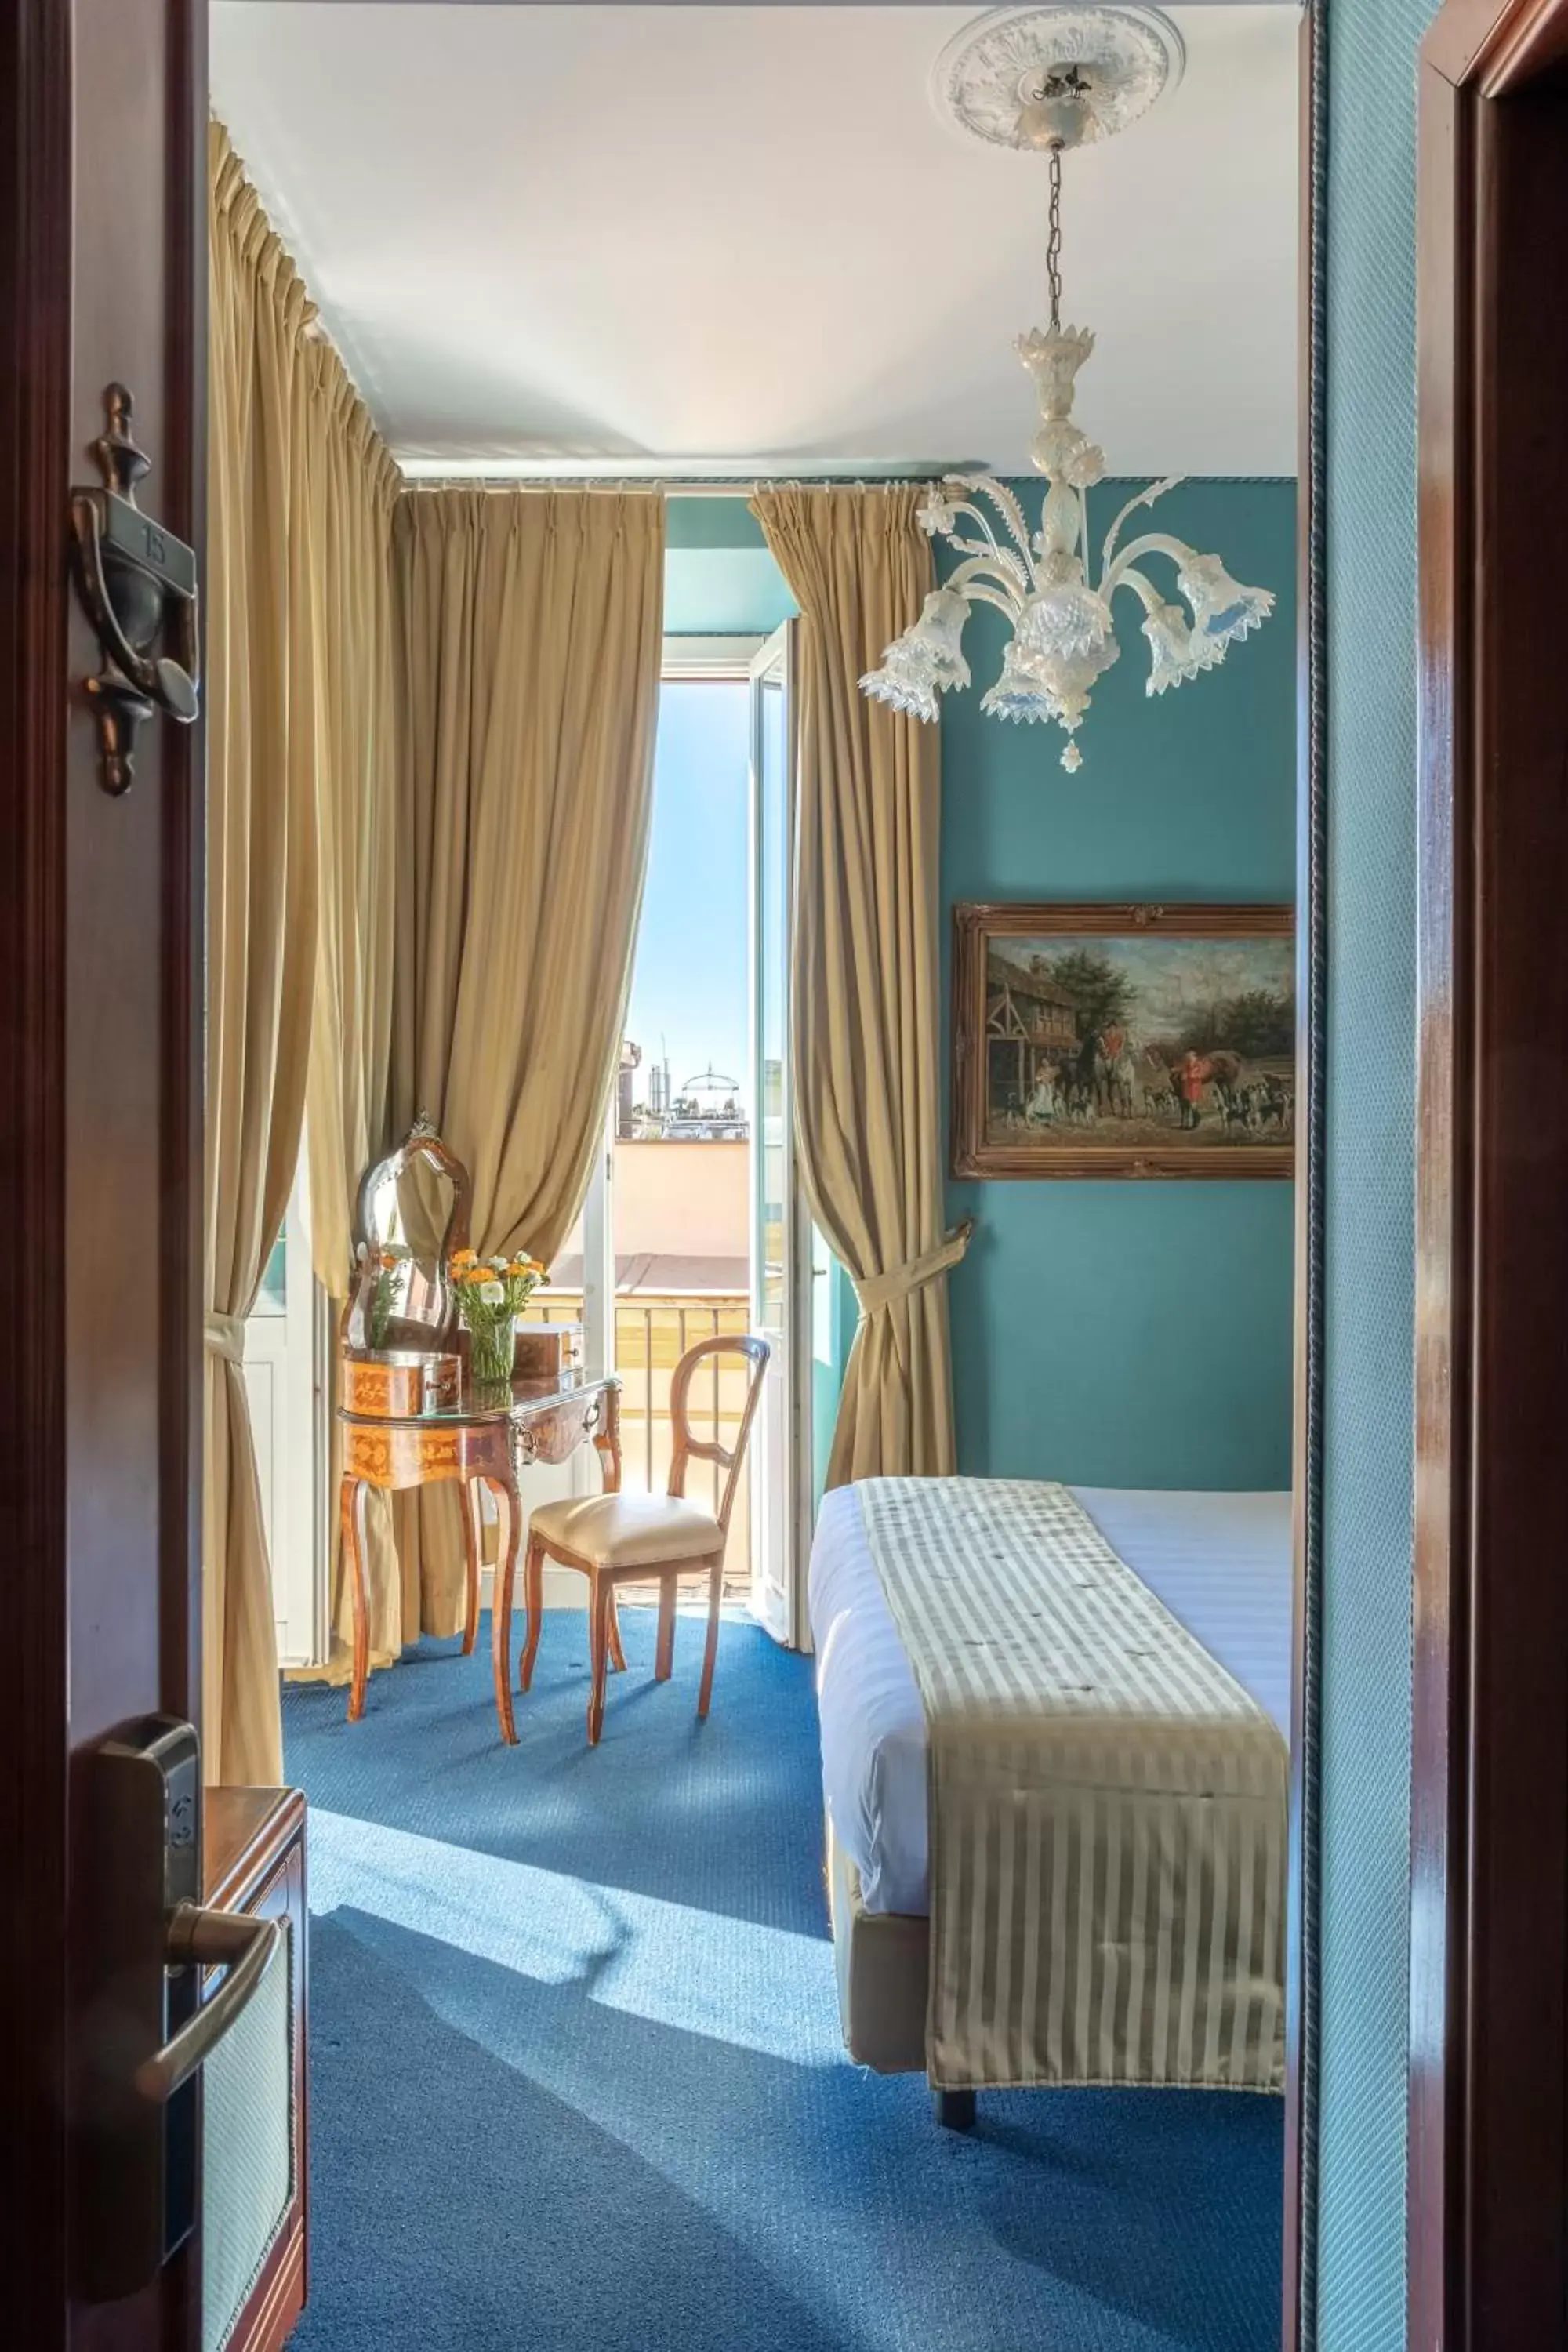 Bedroom in Hotel Scalinata Di Spagna